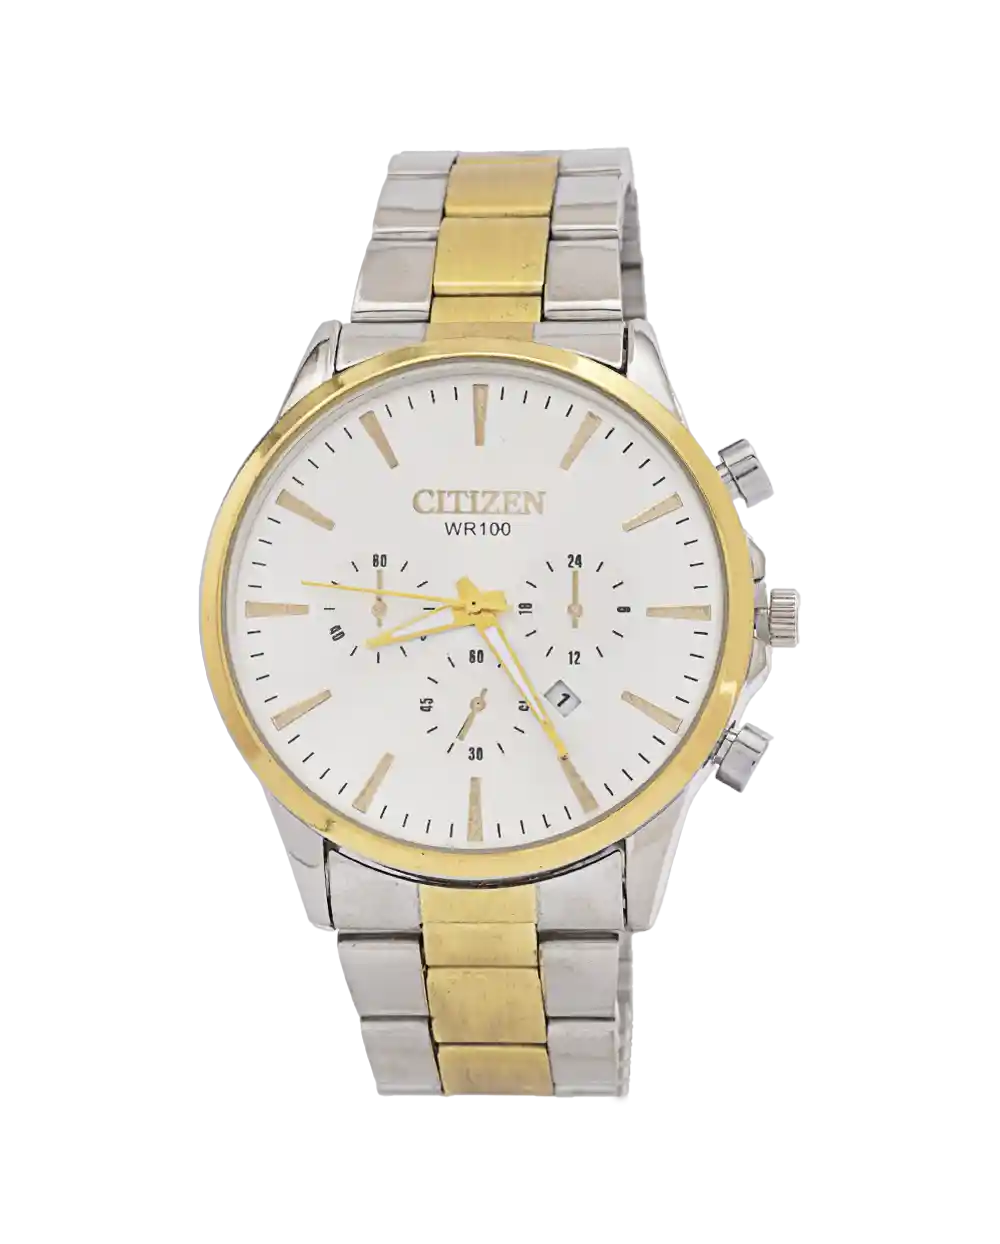 خرید ساعت مچی مردانه سیتیزن CITIZEN مدل 1988 بند استیل نقره ای طلایی و رنگ ثابت با صفحه سفید بهترین قیمت به همراه ارسال رایگان و جعبه